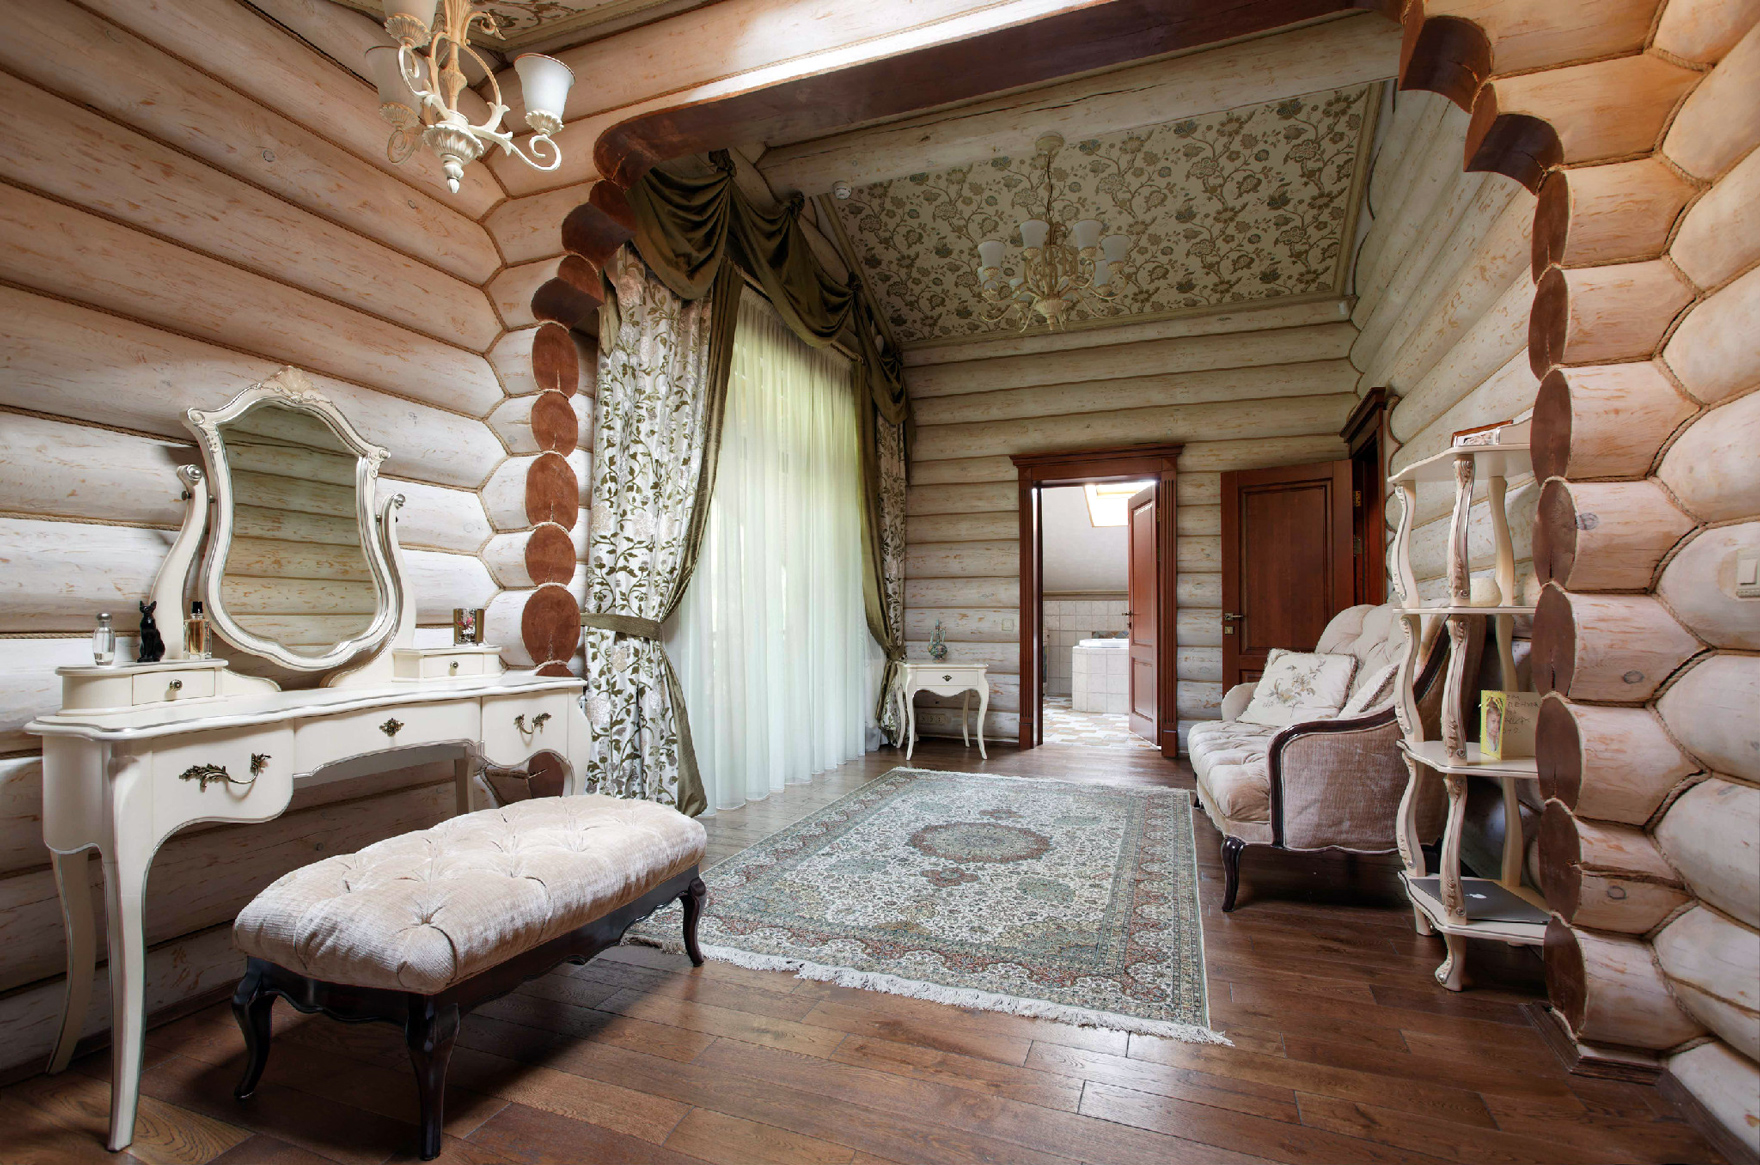 В переплетении узоров и стилей: оригинальный взгляд на интерьер деревянного дома из бревна